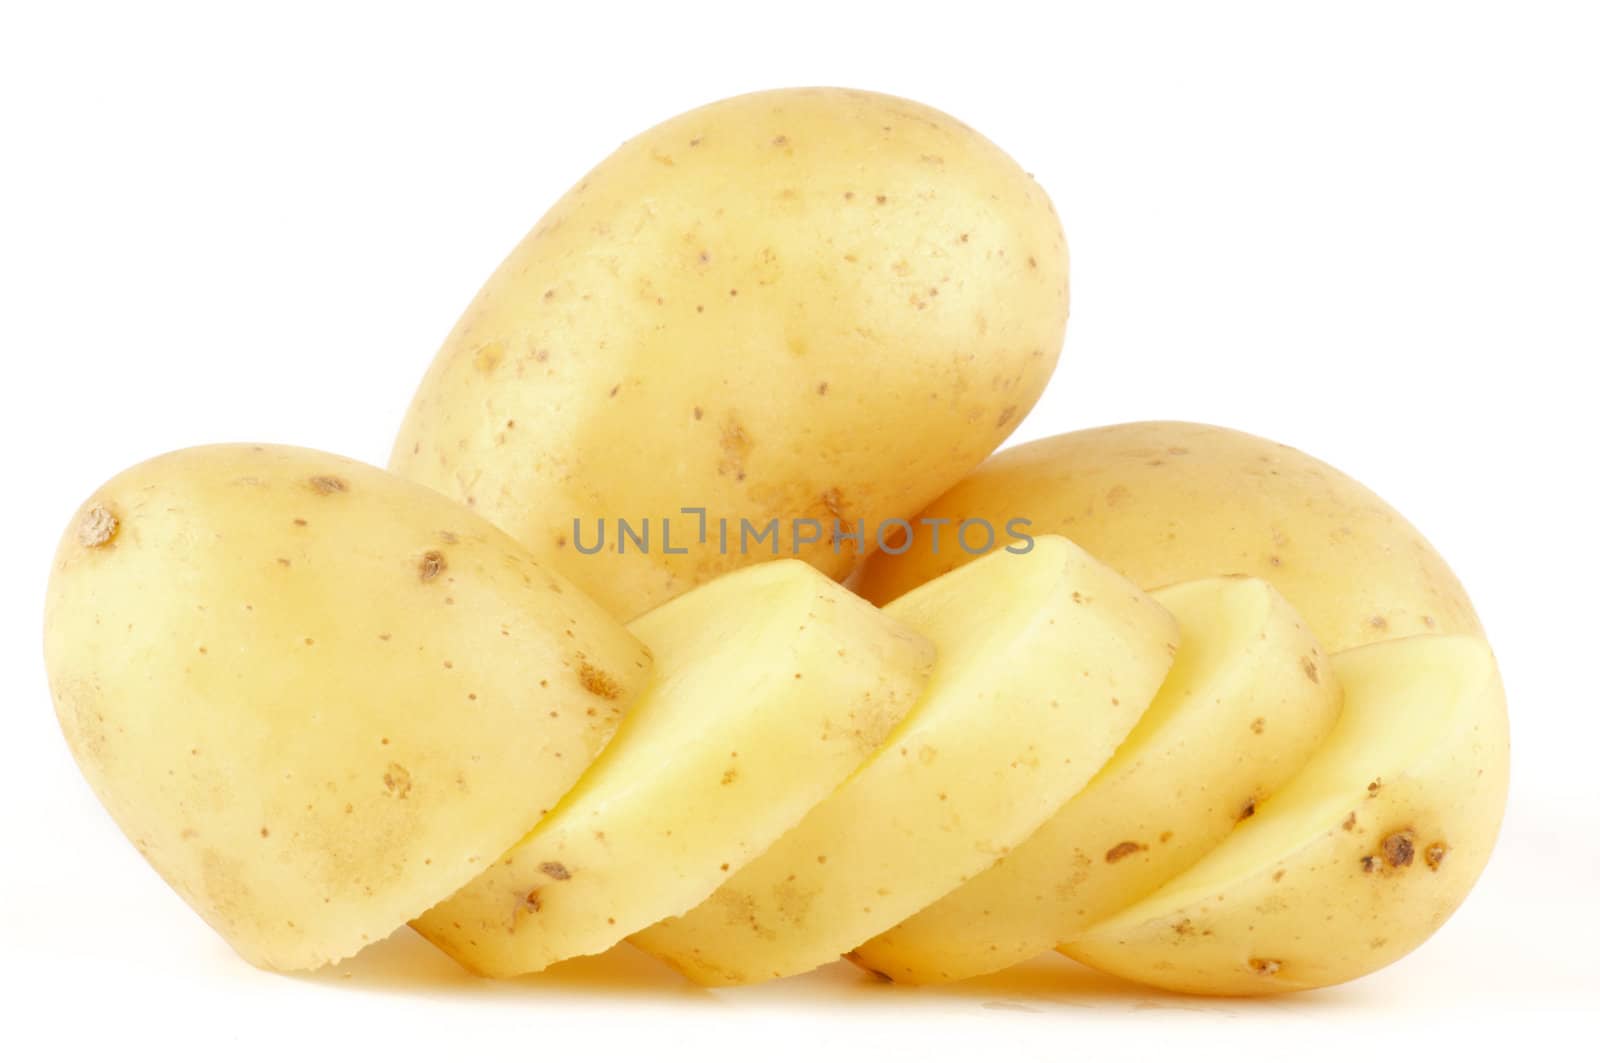 Raw Potato Full body and Freshly slided by zhekos